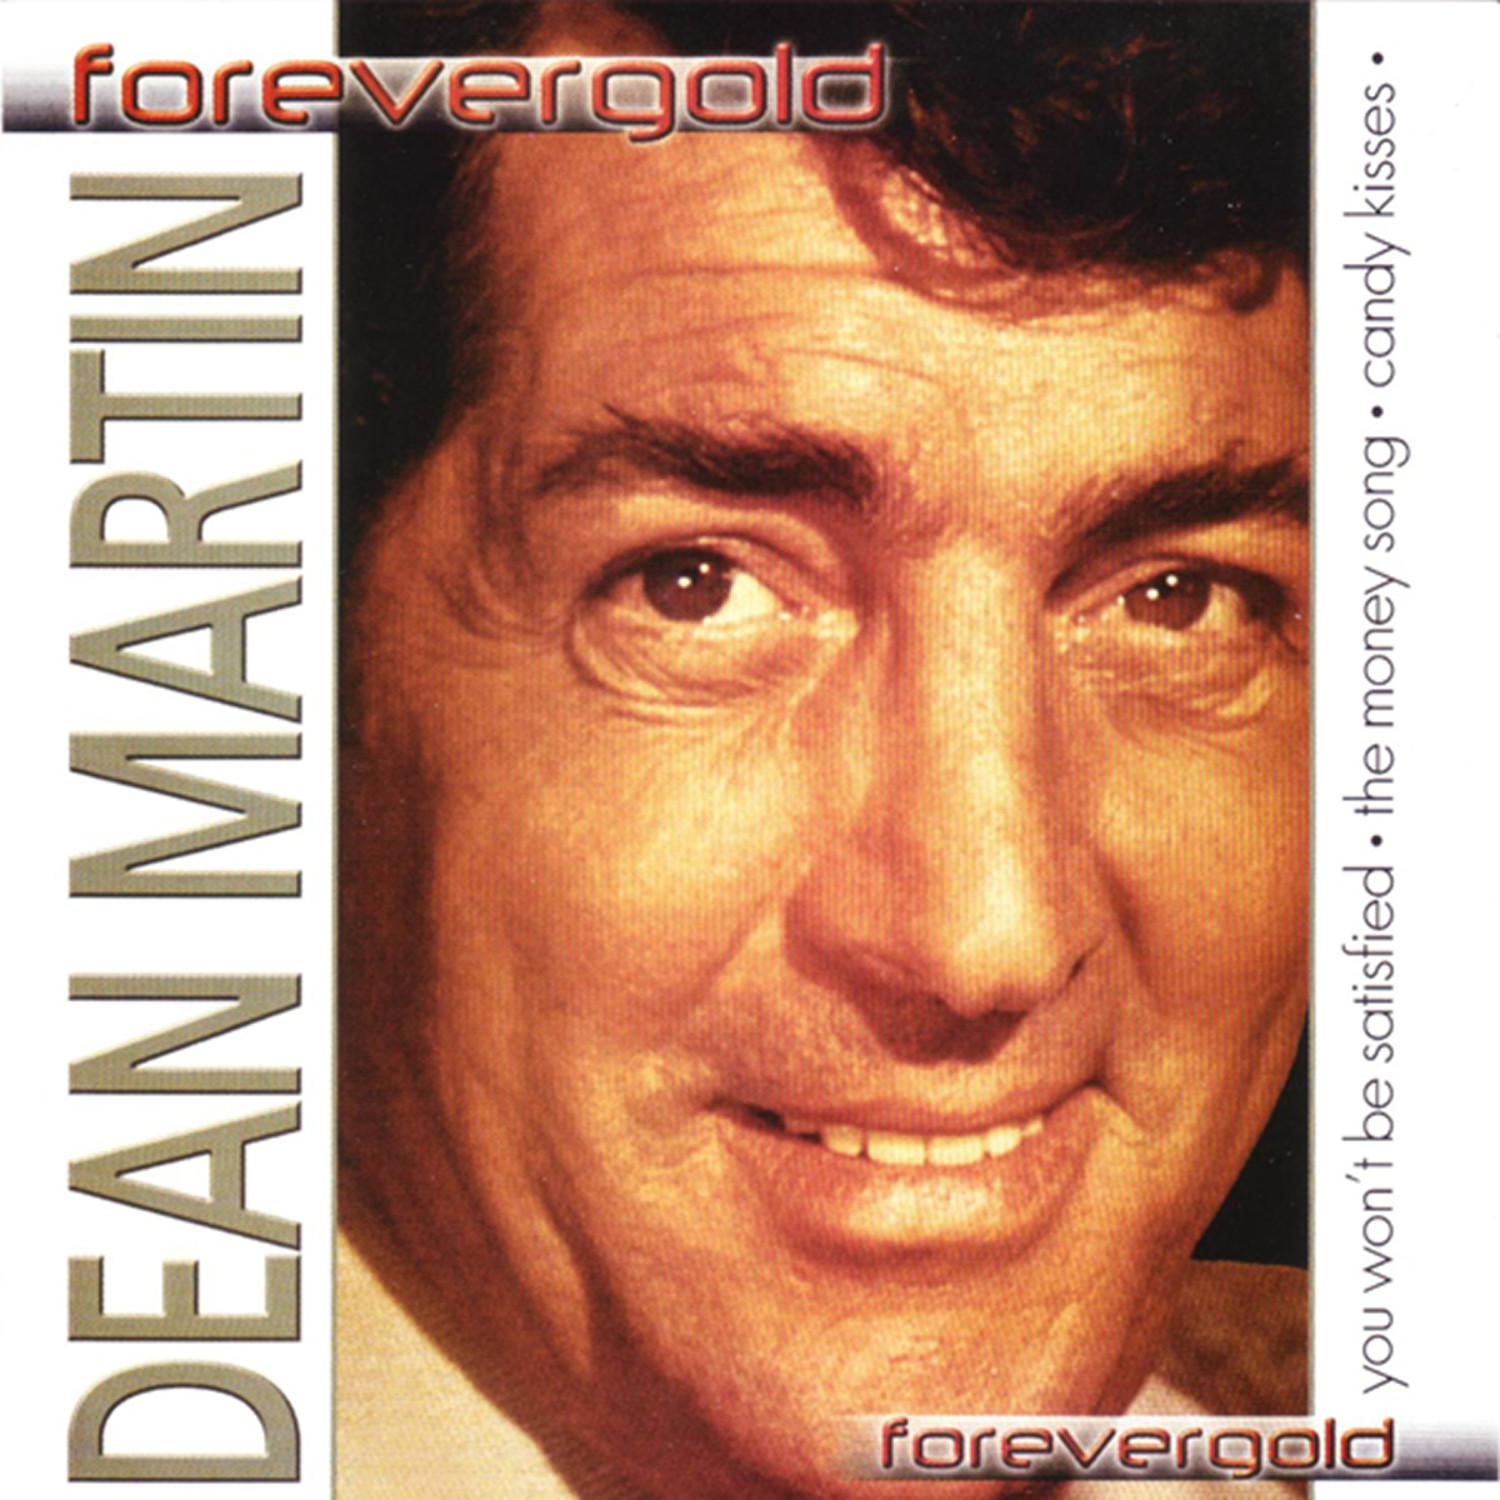 Dean Martin - Forvergold